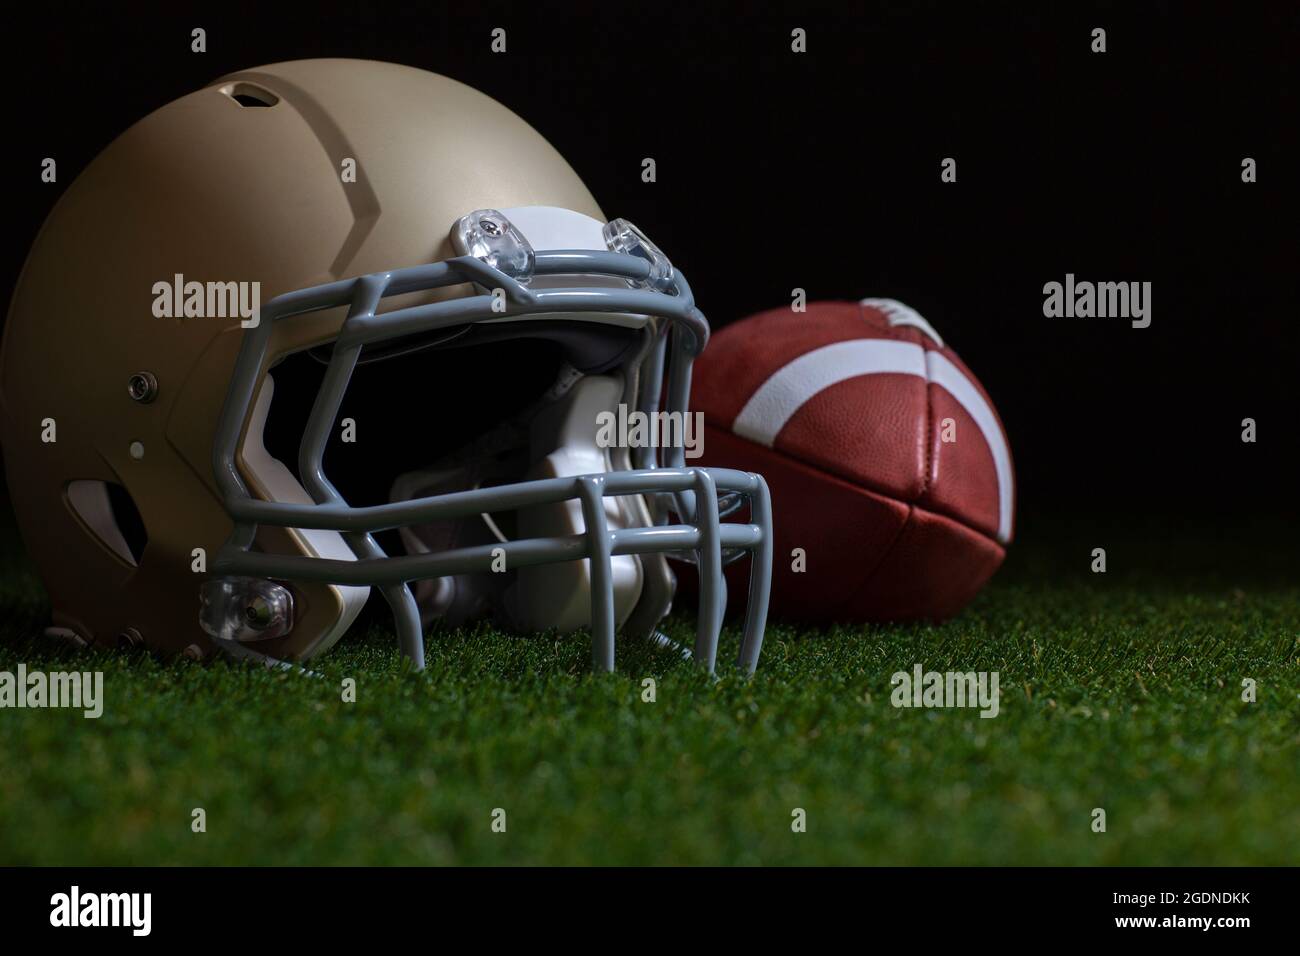 Enfoque selectivo de ángulo bajo de fútbol y casco de oro sobre hierba con fondo oscuro Foto de stock